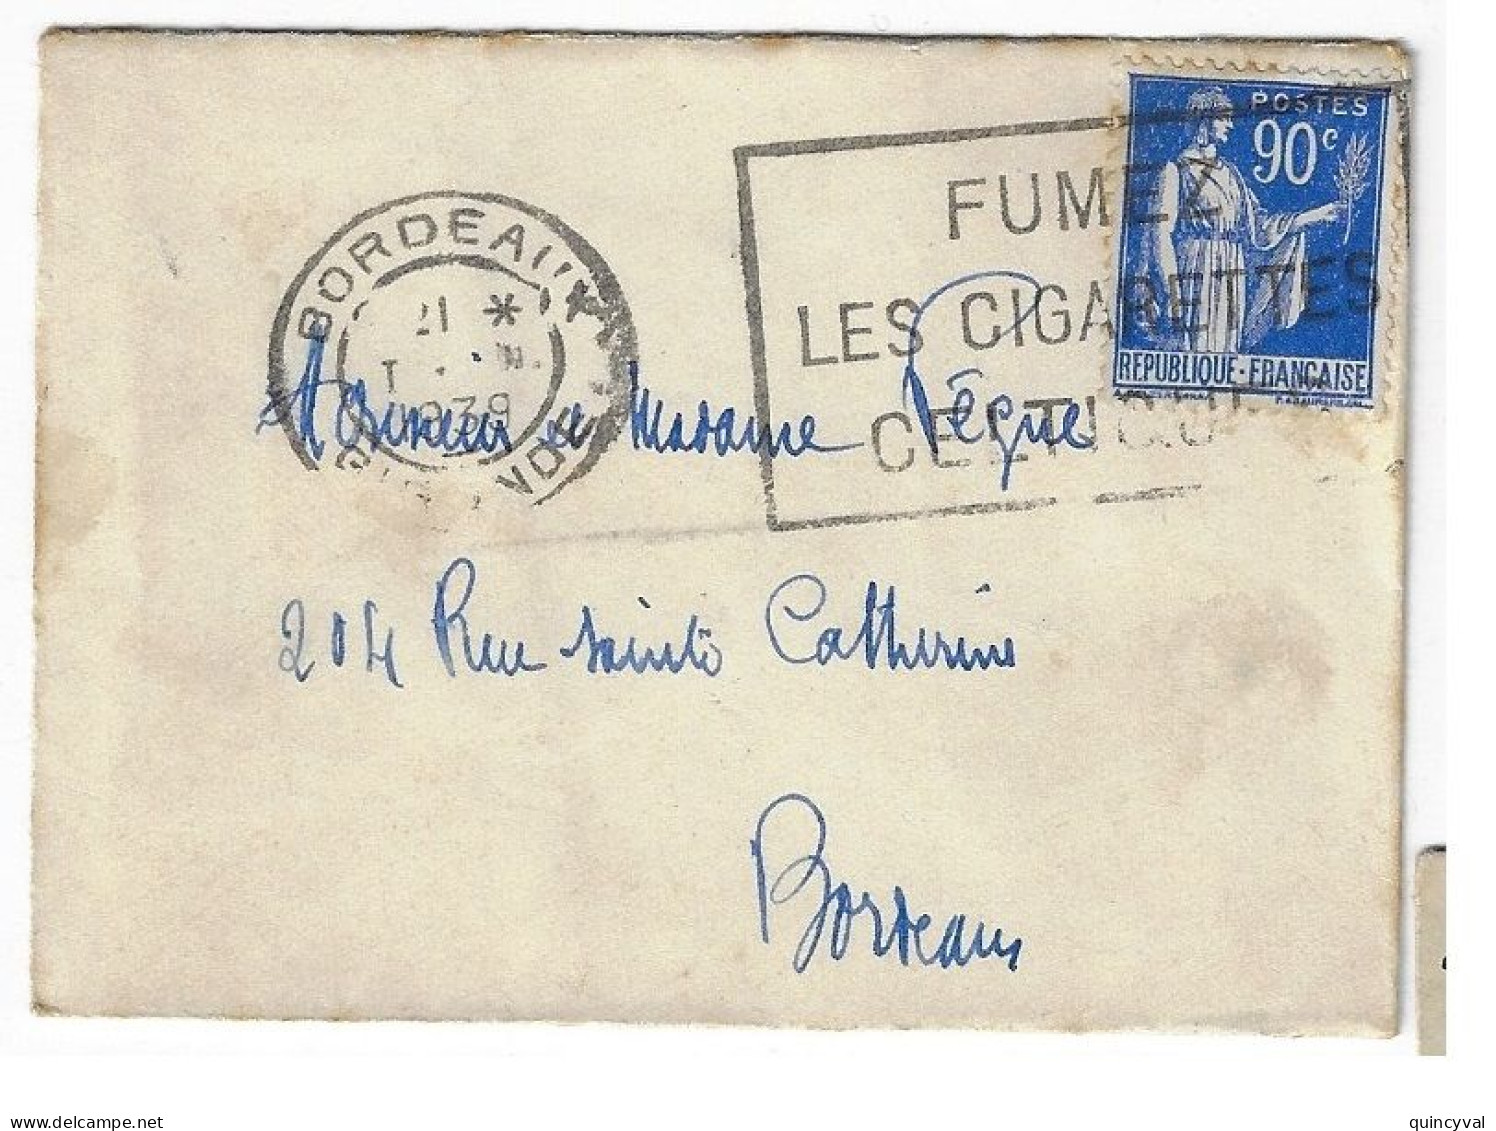 BORDEAUX Enveloppe Carte De Visite Mignonnette 90c Paix Yv 368 Ob Meca 1939 Fumez Cigarettes Celtiques - Lettres & Documents